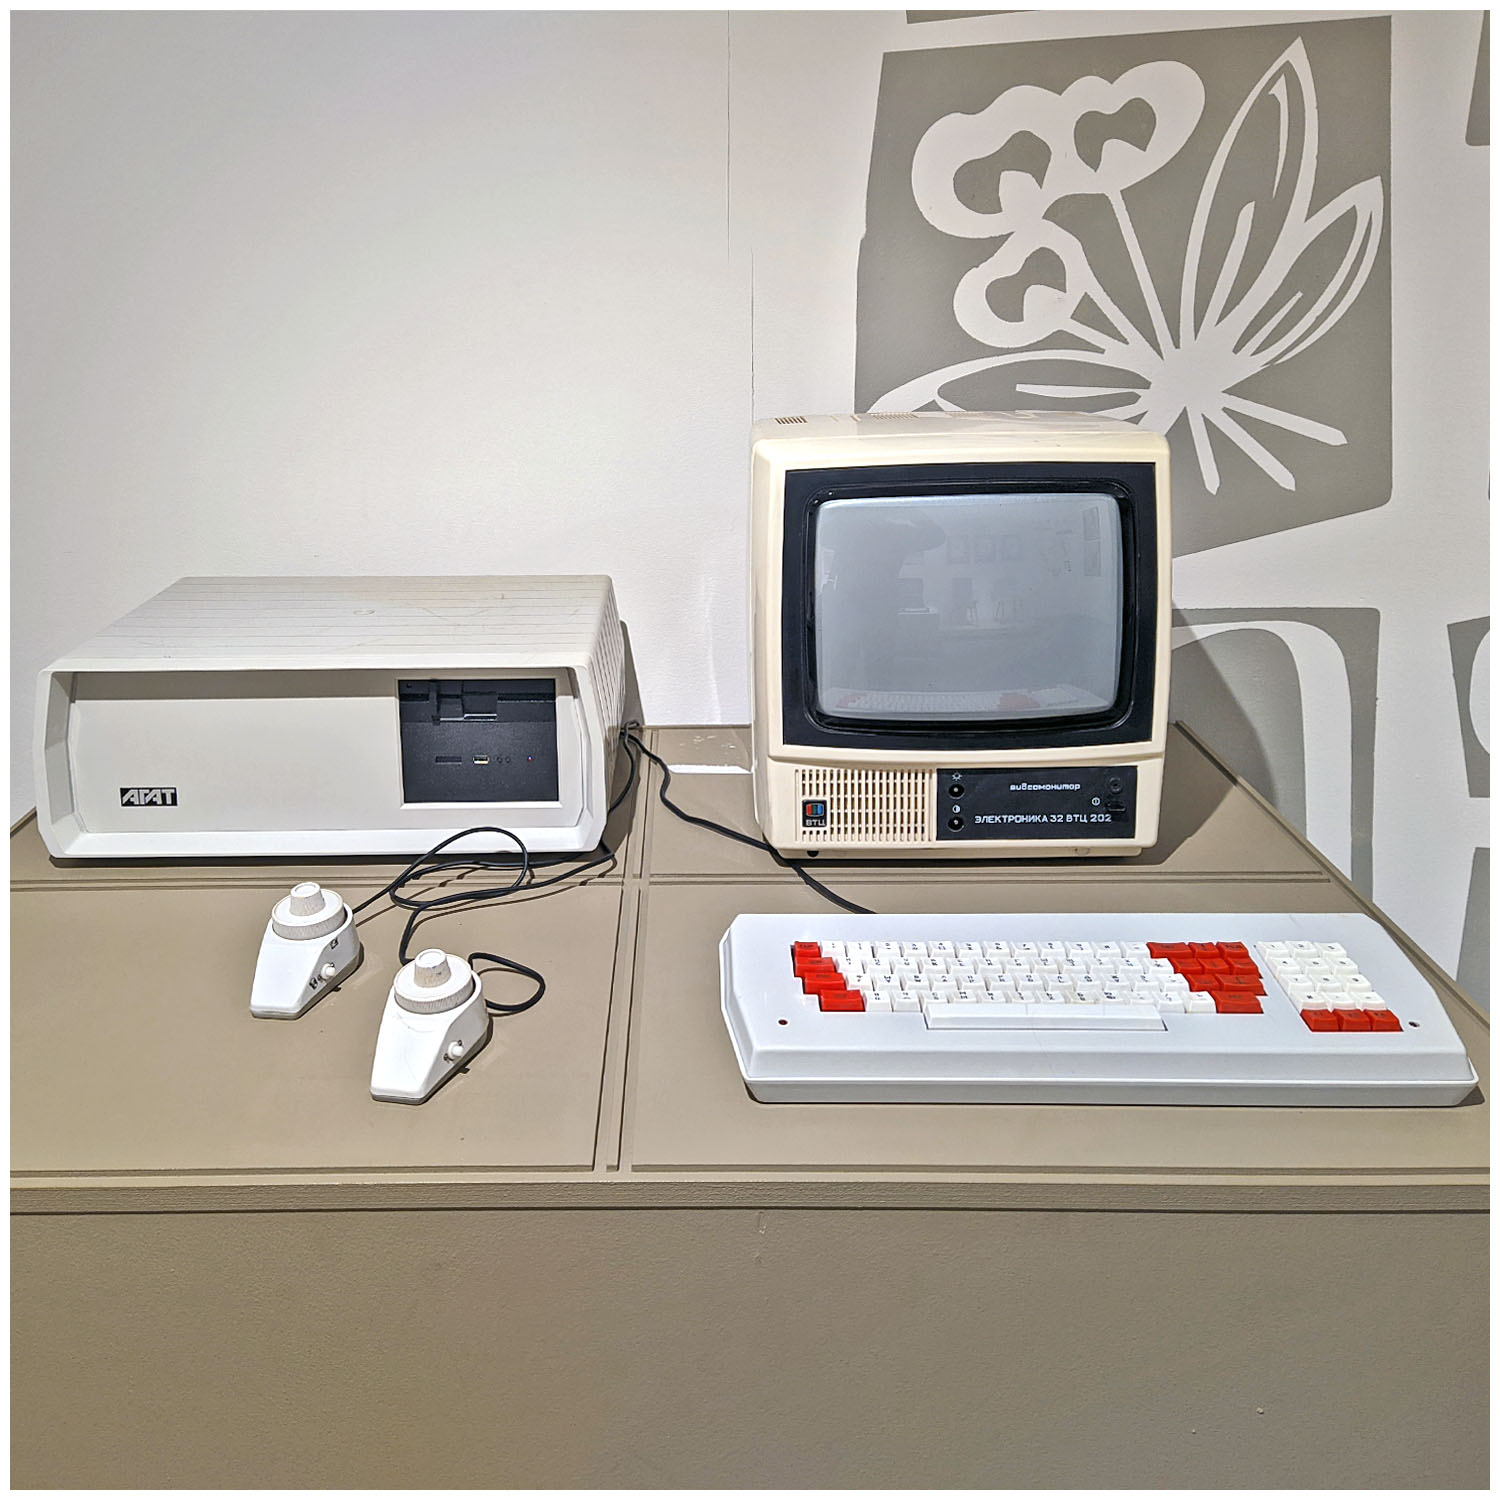 Персональный компьютер «Агат-7». 1985. Яндекс Музей